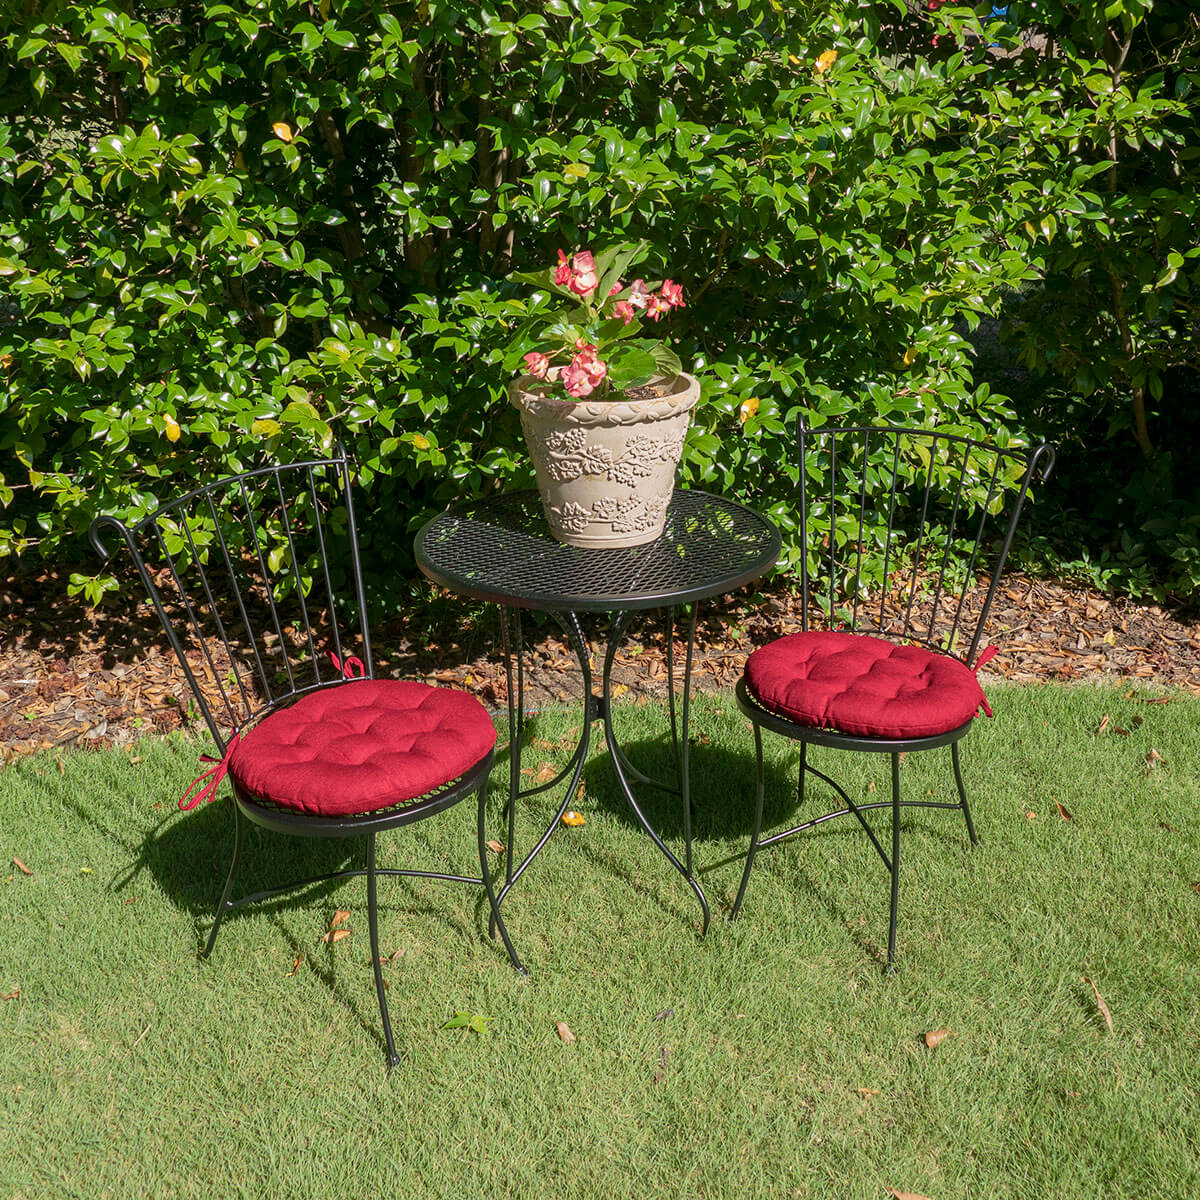 Bistro Chair Cushion - Sylvan Teal - 16 Outdoor Round Chair Cushion